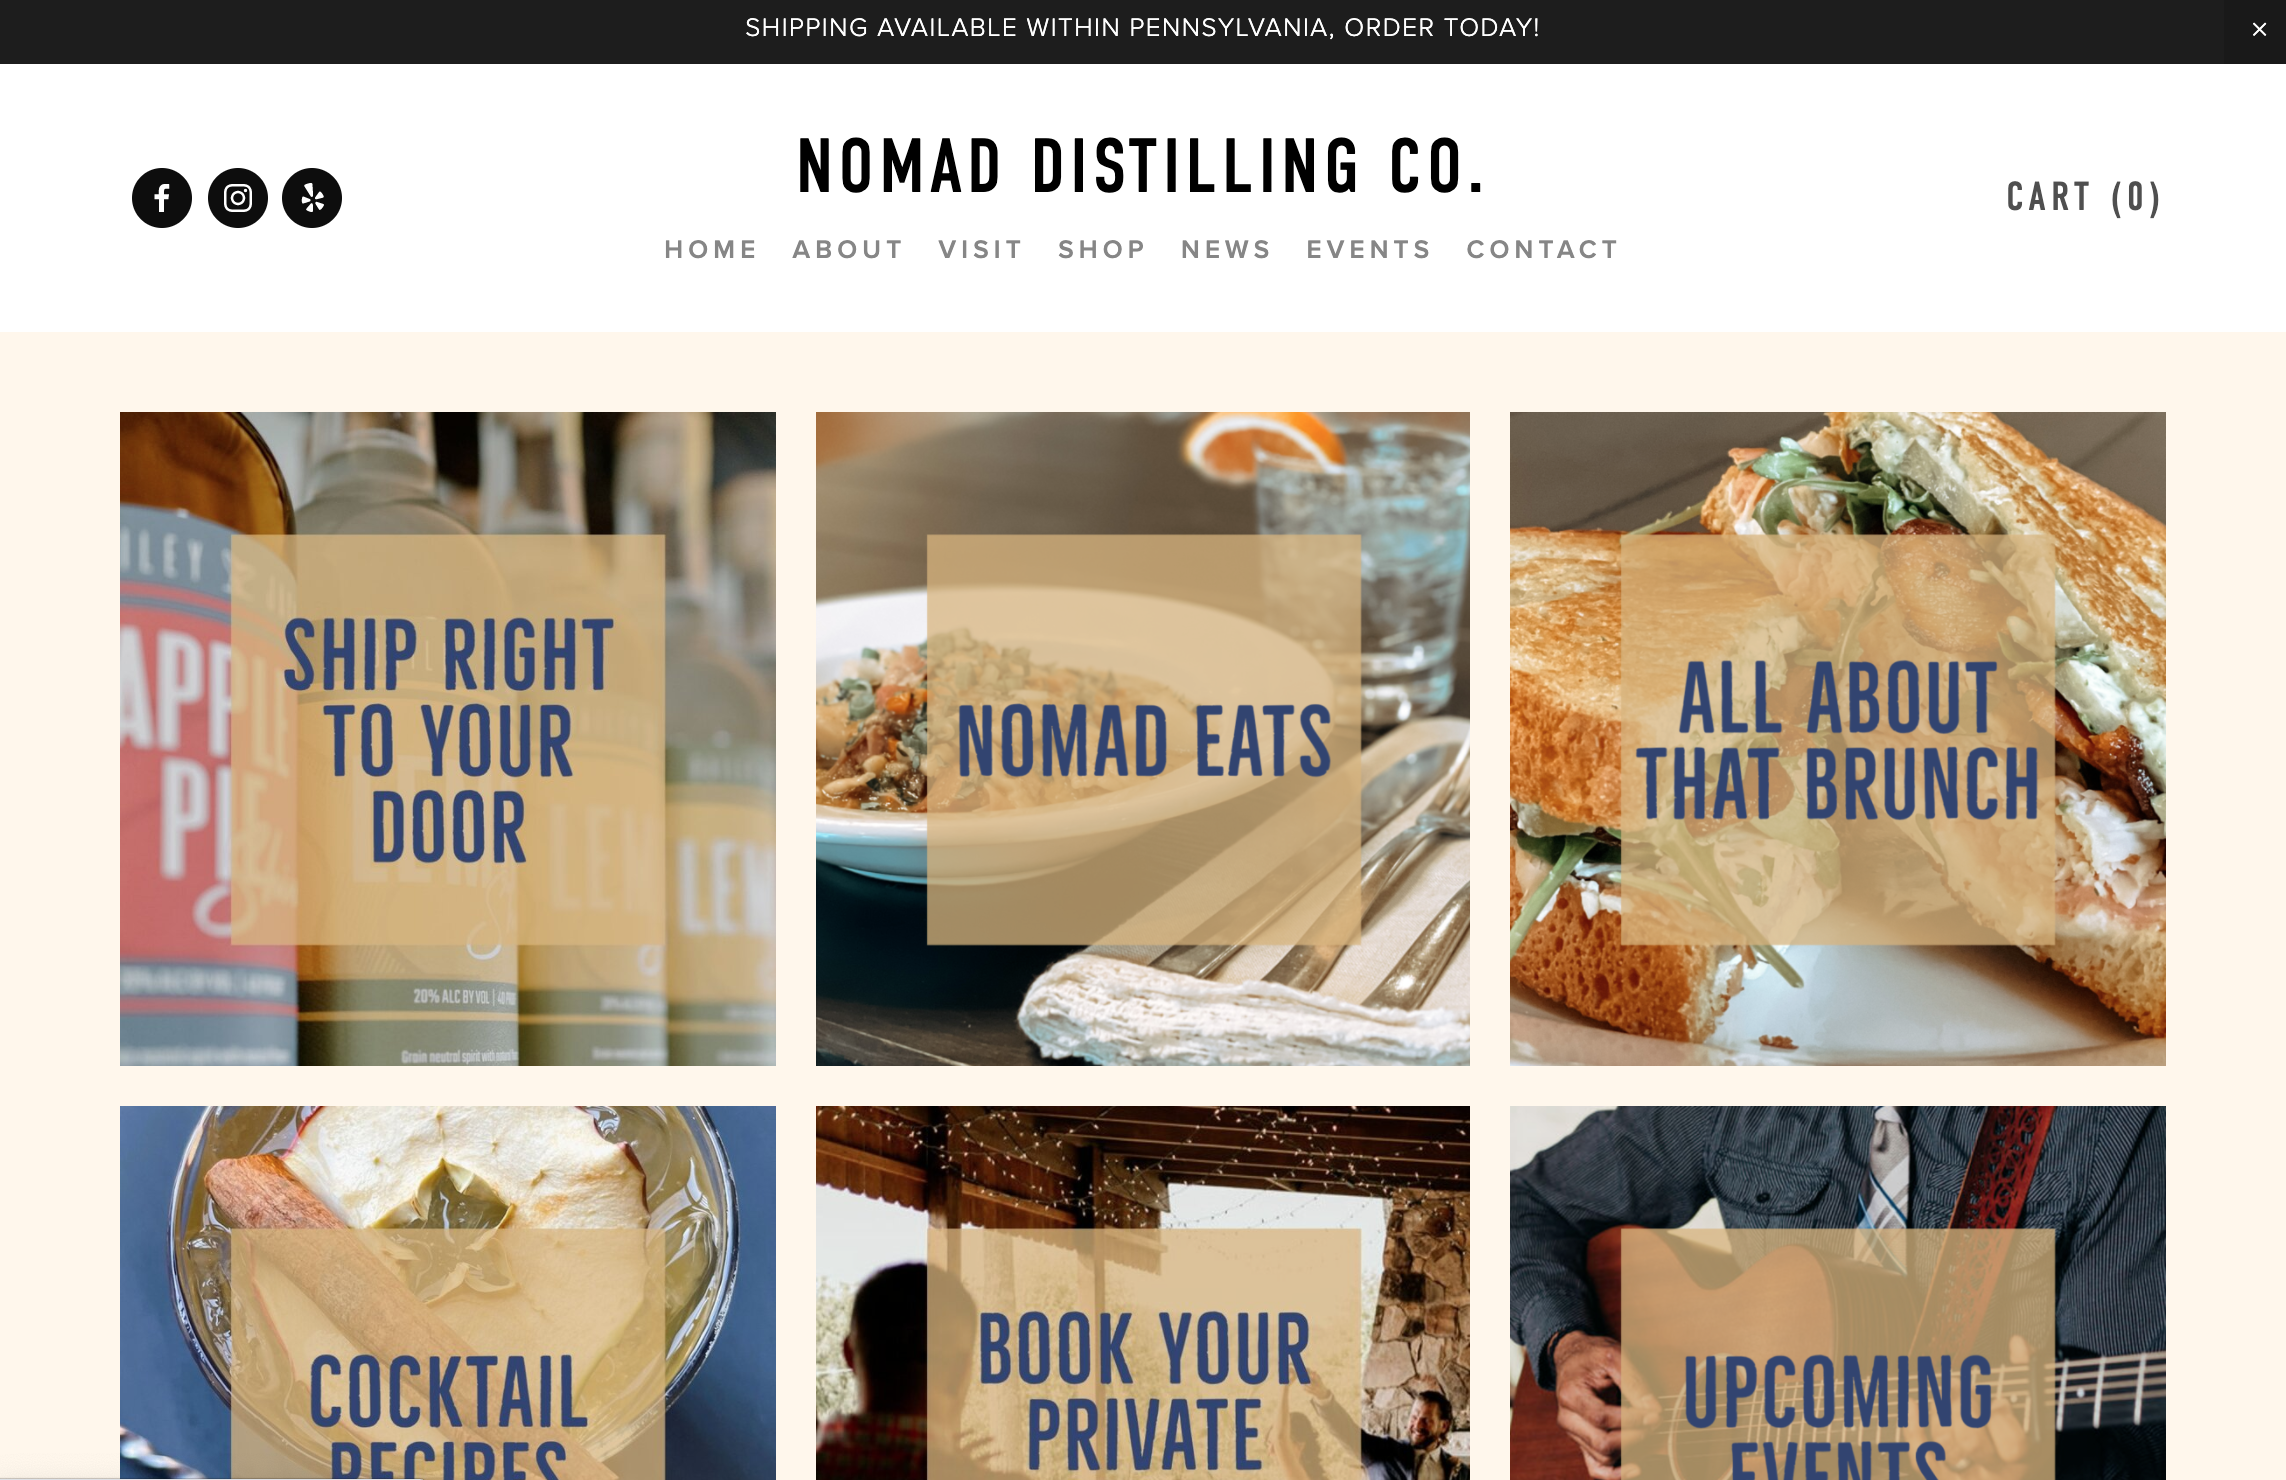 Nomad Distilling Co